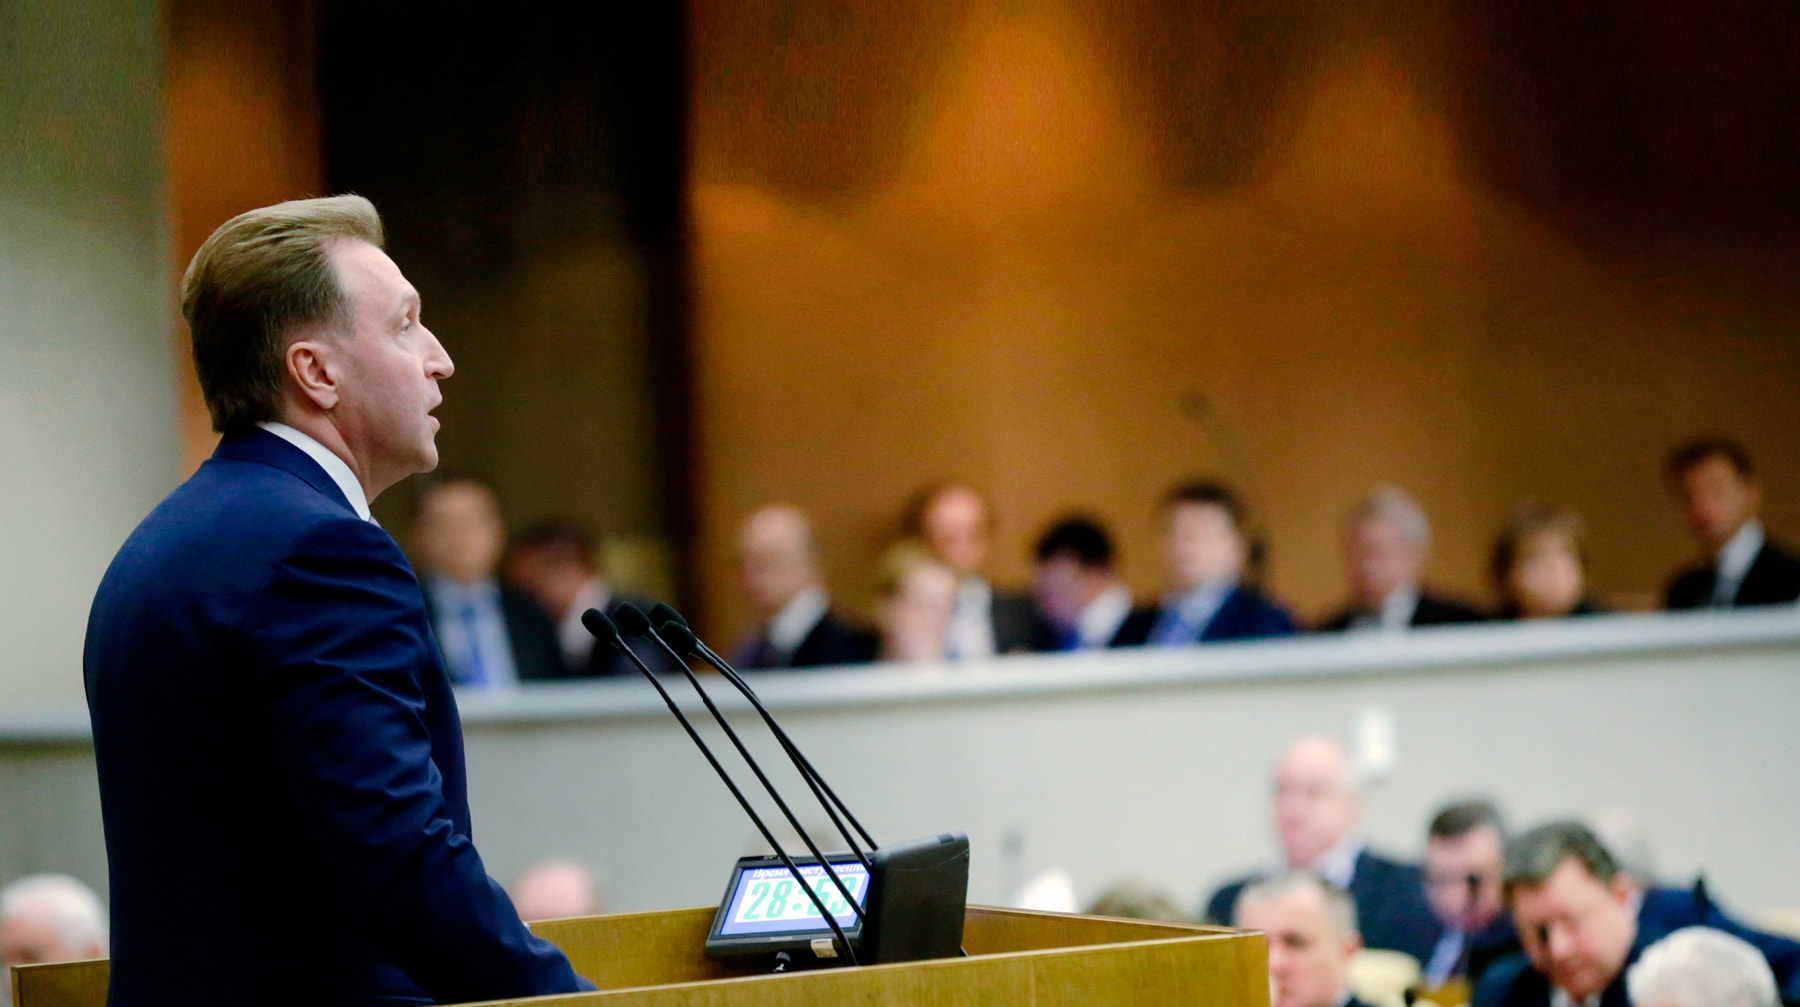 Вице-премьер обсудит с депутатами проблемы нового Таможенного кодекса Евразийского экономического союза Фото: © duma.gov.ru